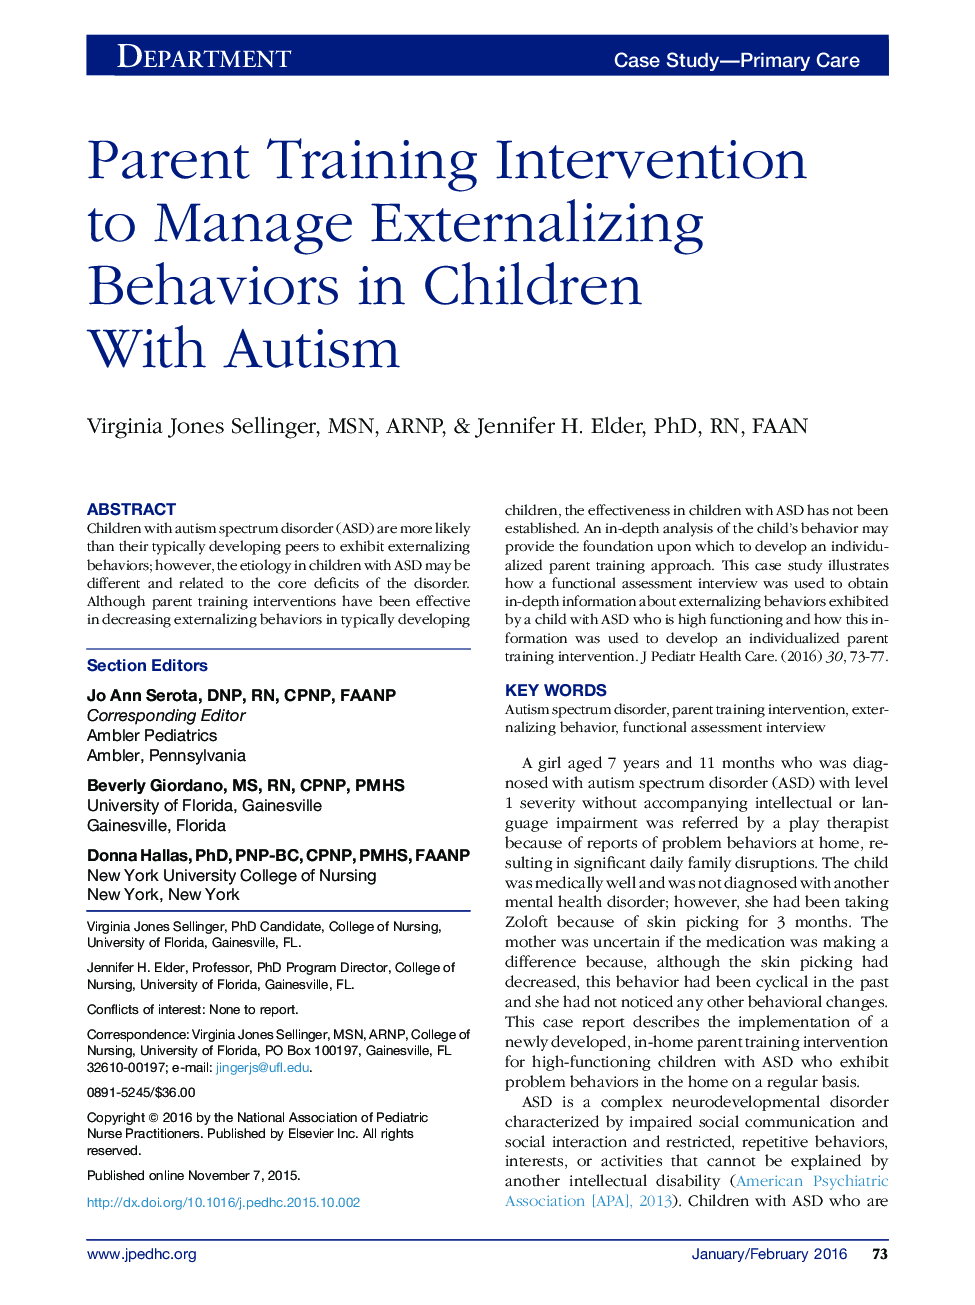 مداخله آموزشی والدین برای مدیریت رفتارهای بیرونی در کودکان مبتلا به اوتیسم